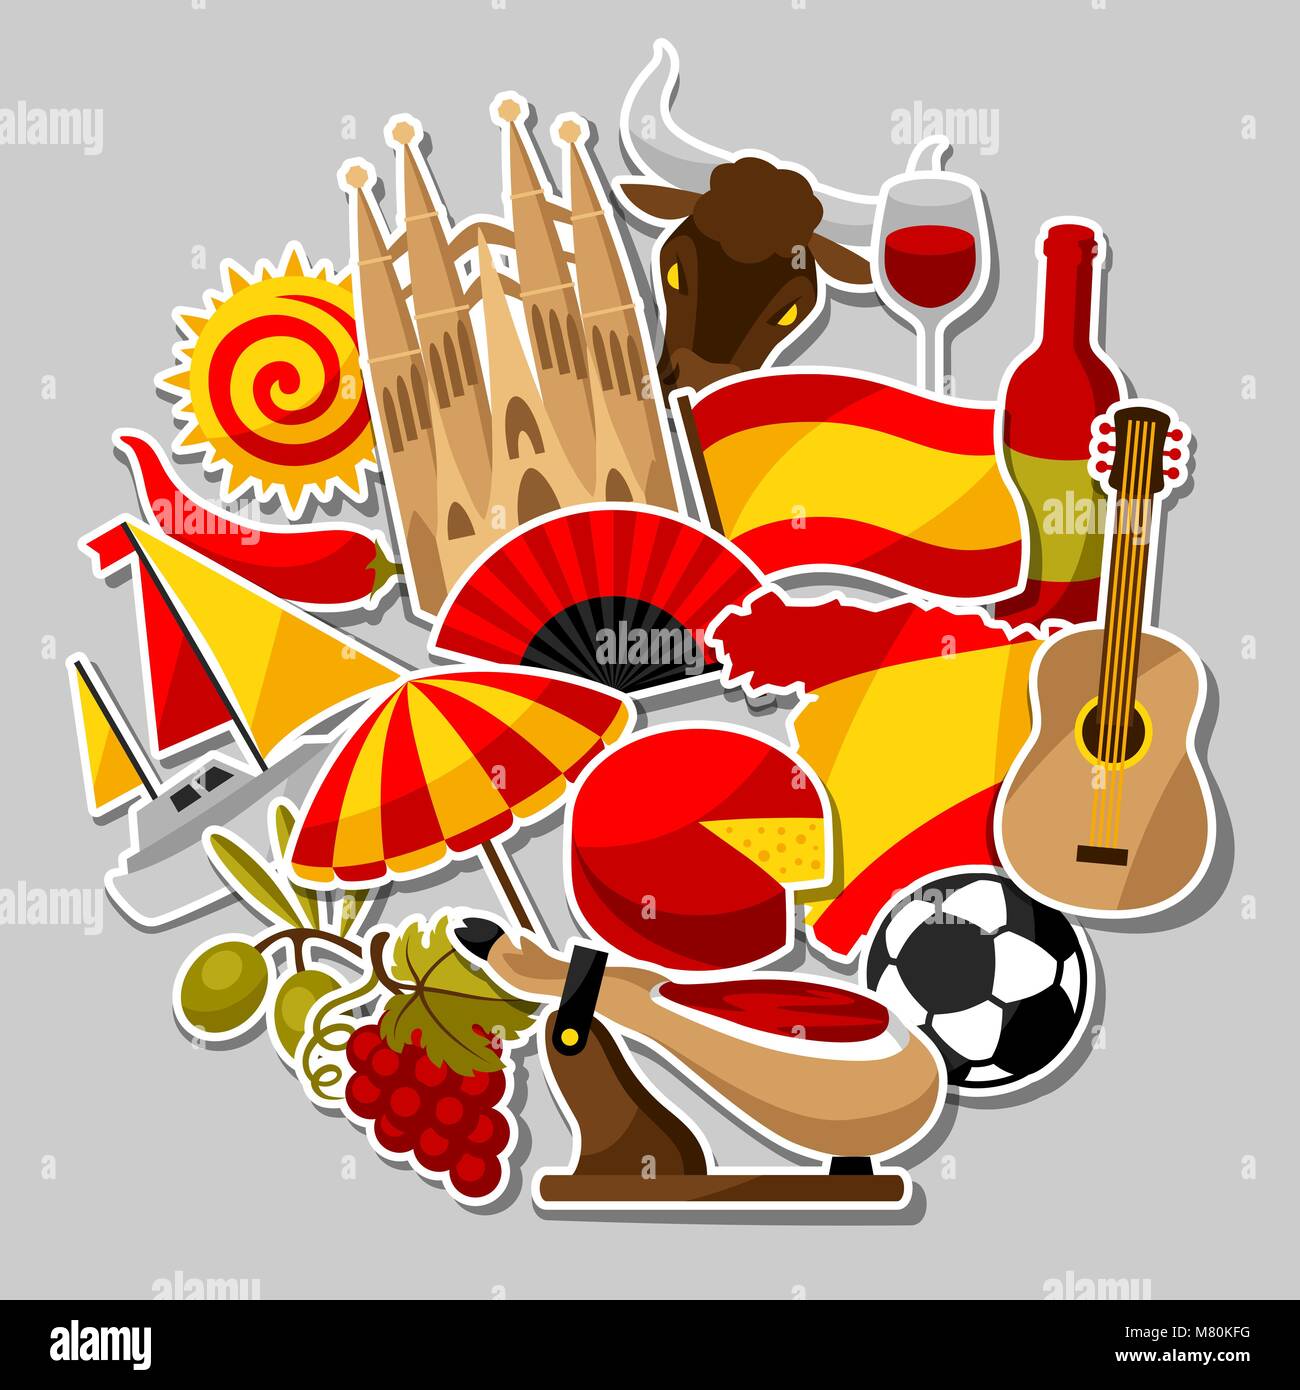 Spanien Hintergrund Design. Spanische traditionelle Aufkleber Symbole und Objekte Stock Vektor